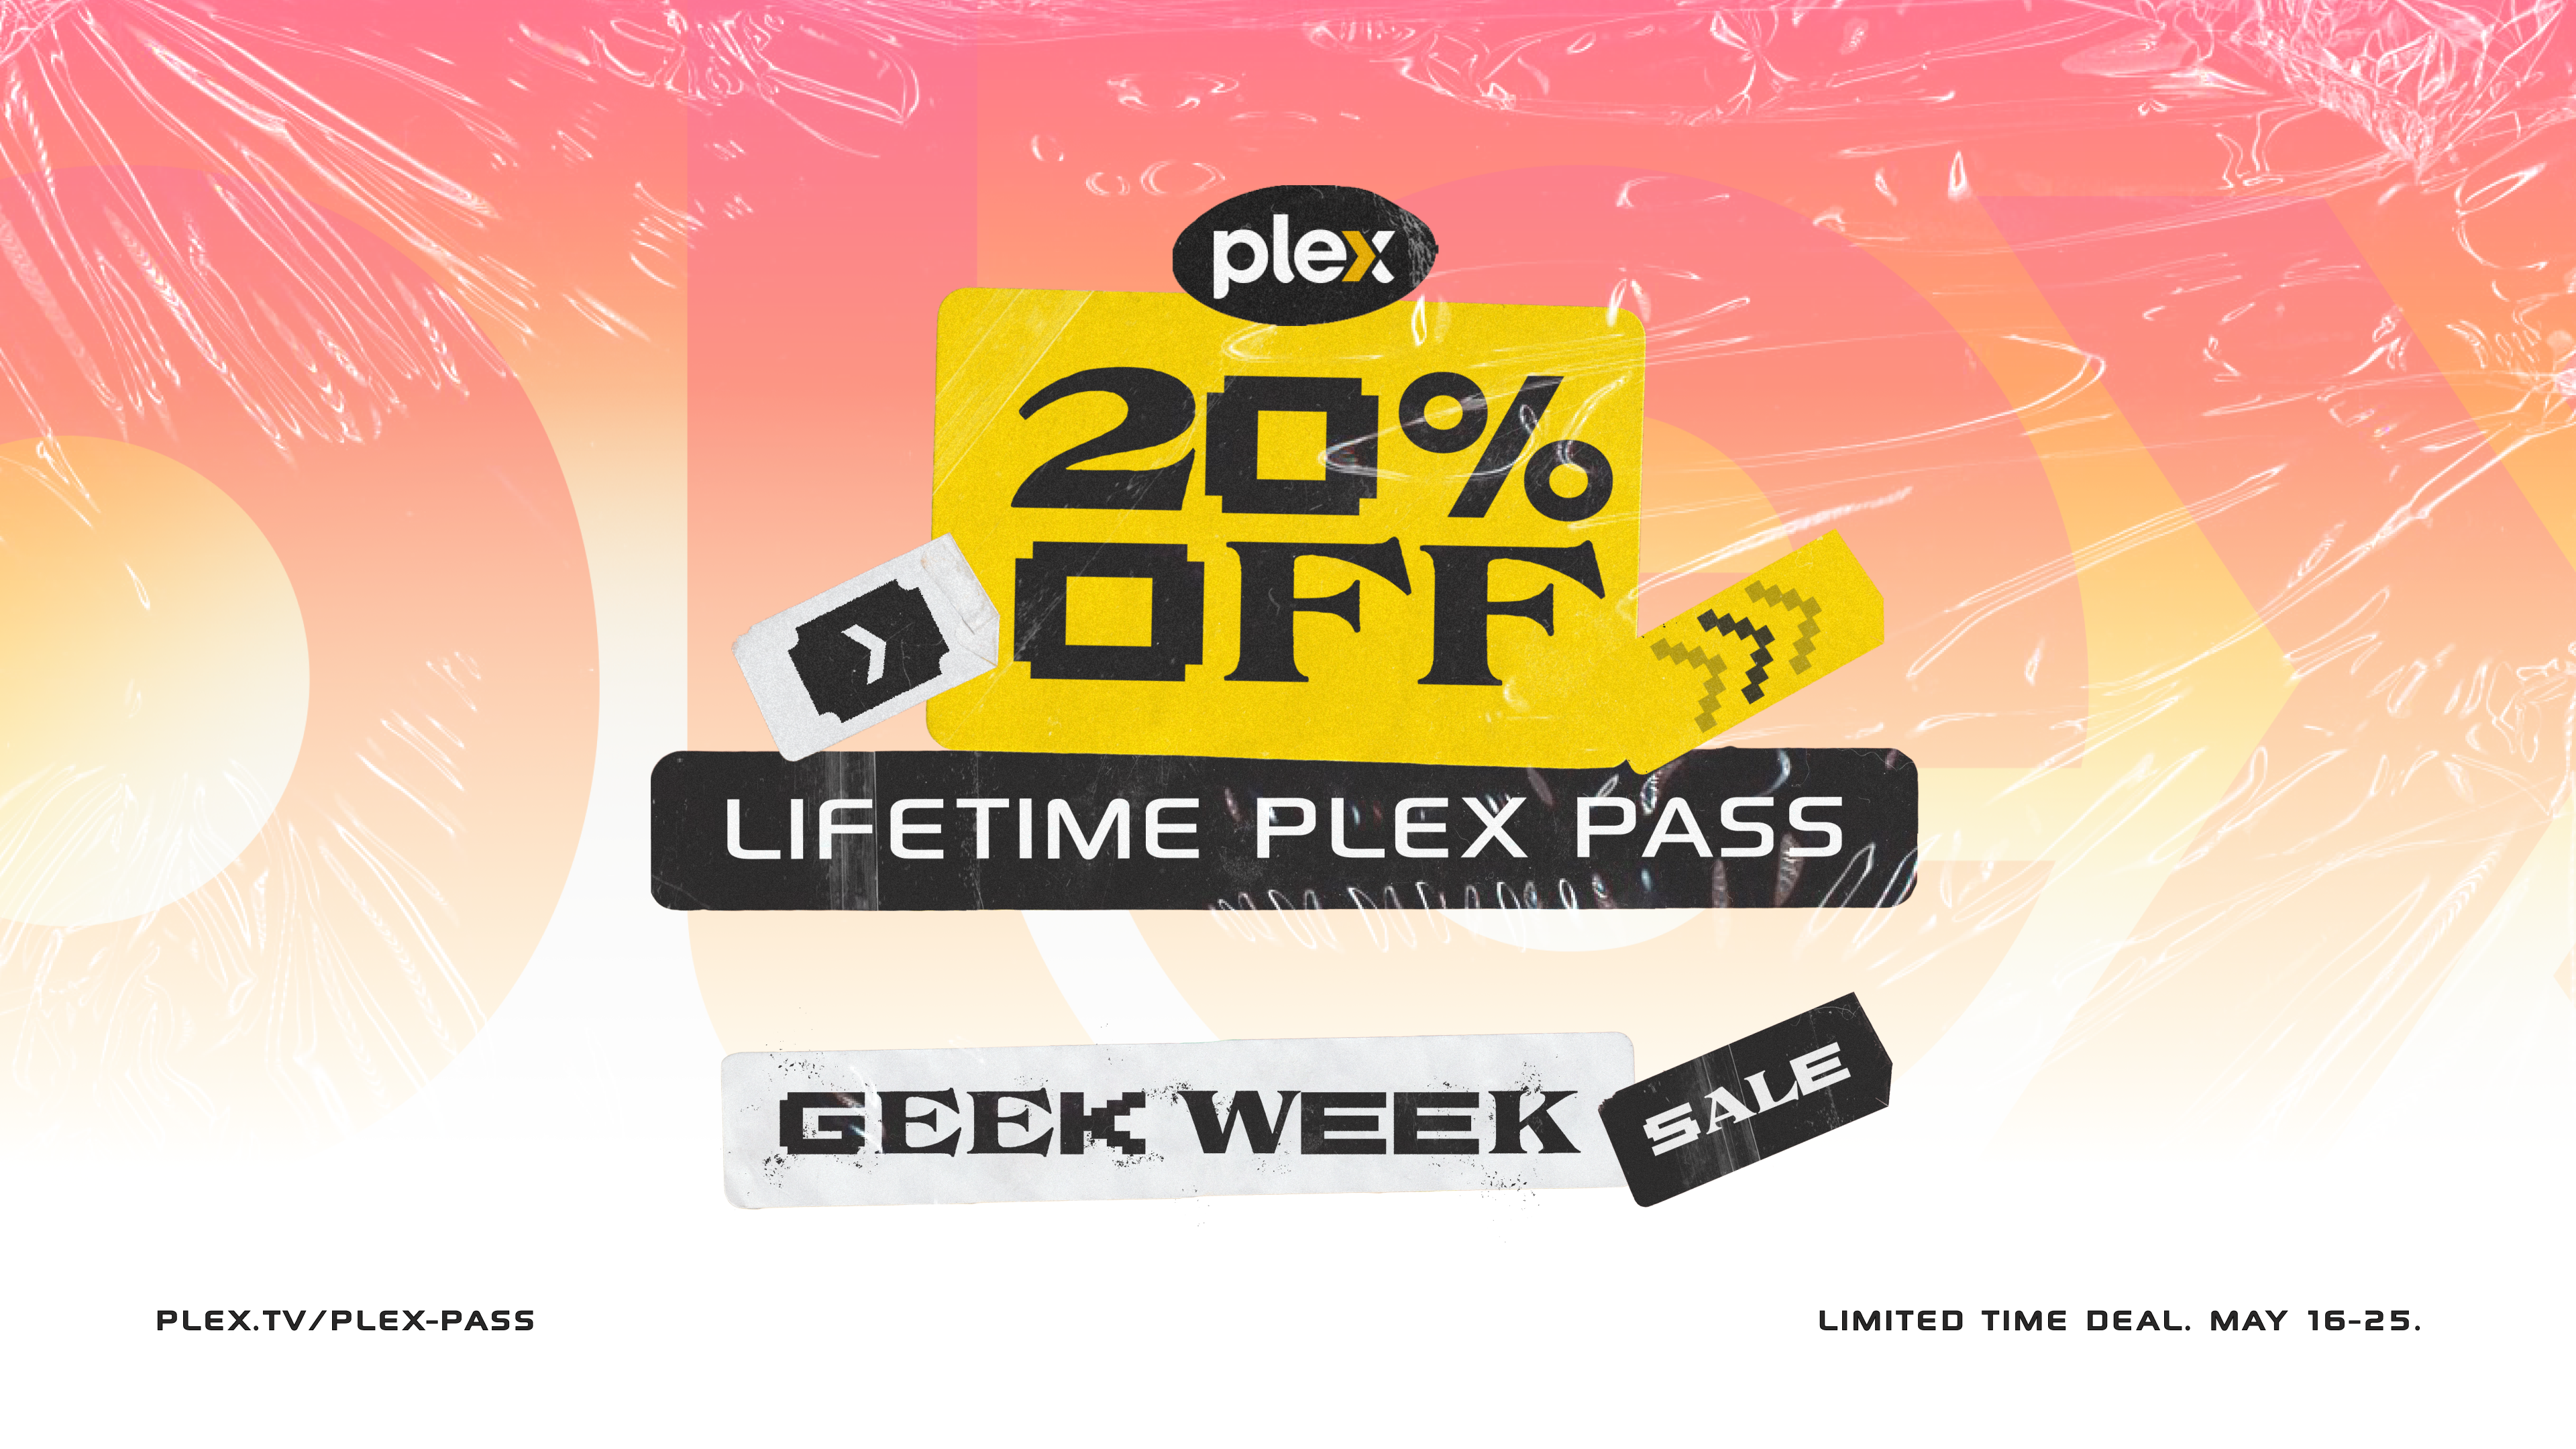 Deal Alert! Save 20% Off Lifetime Plex Pass During Plex Geek Week Sale